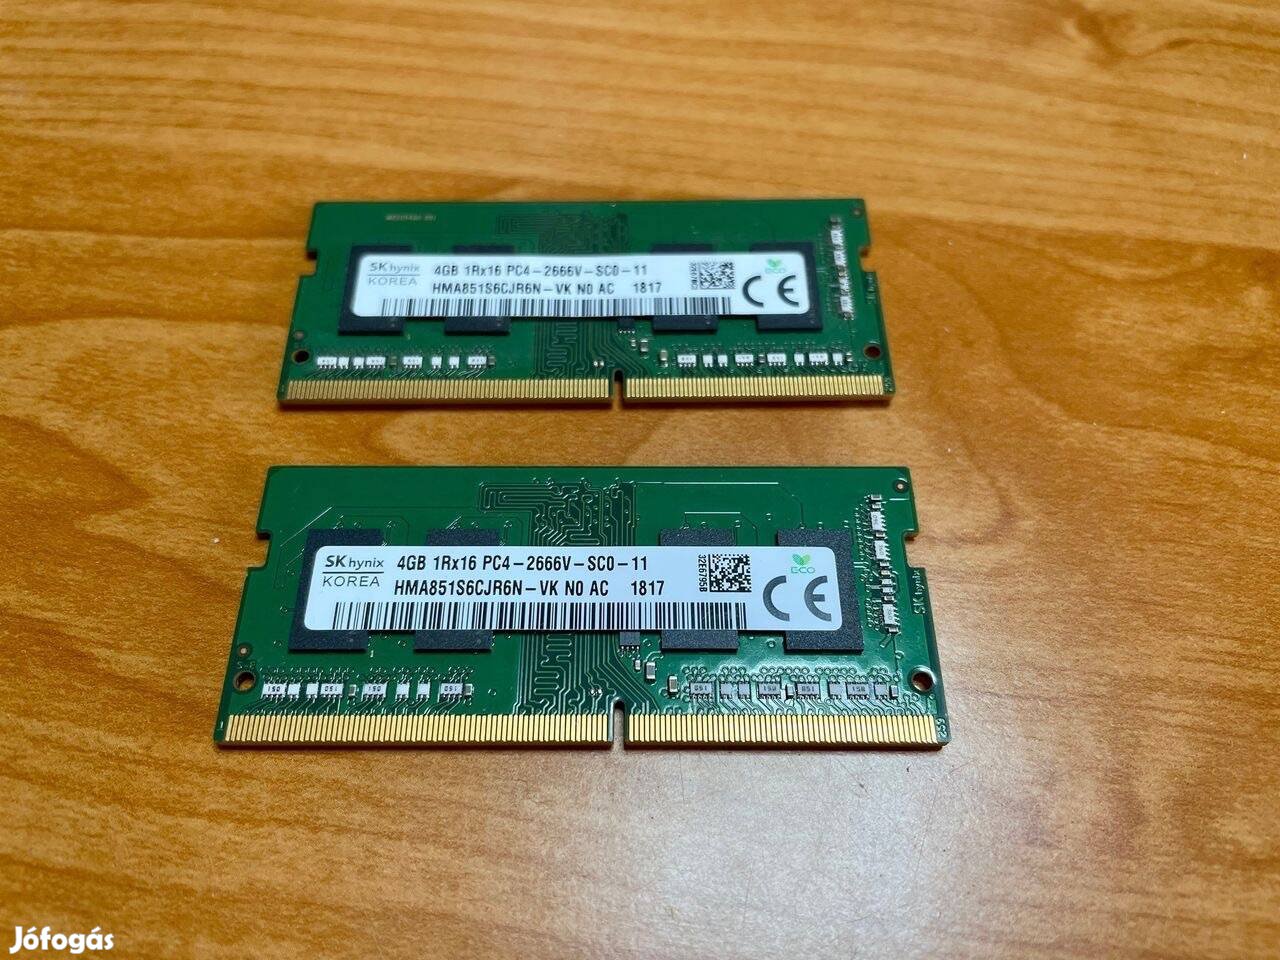 SK Hynix 8GB (2X4gb) DDR4 2666MHz (imac) HMA851S6Cjr6N-VK